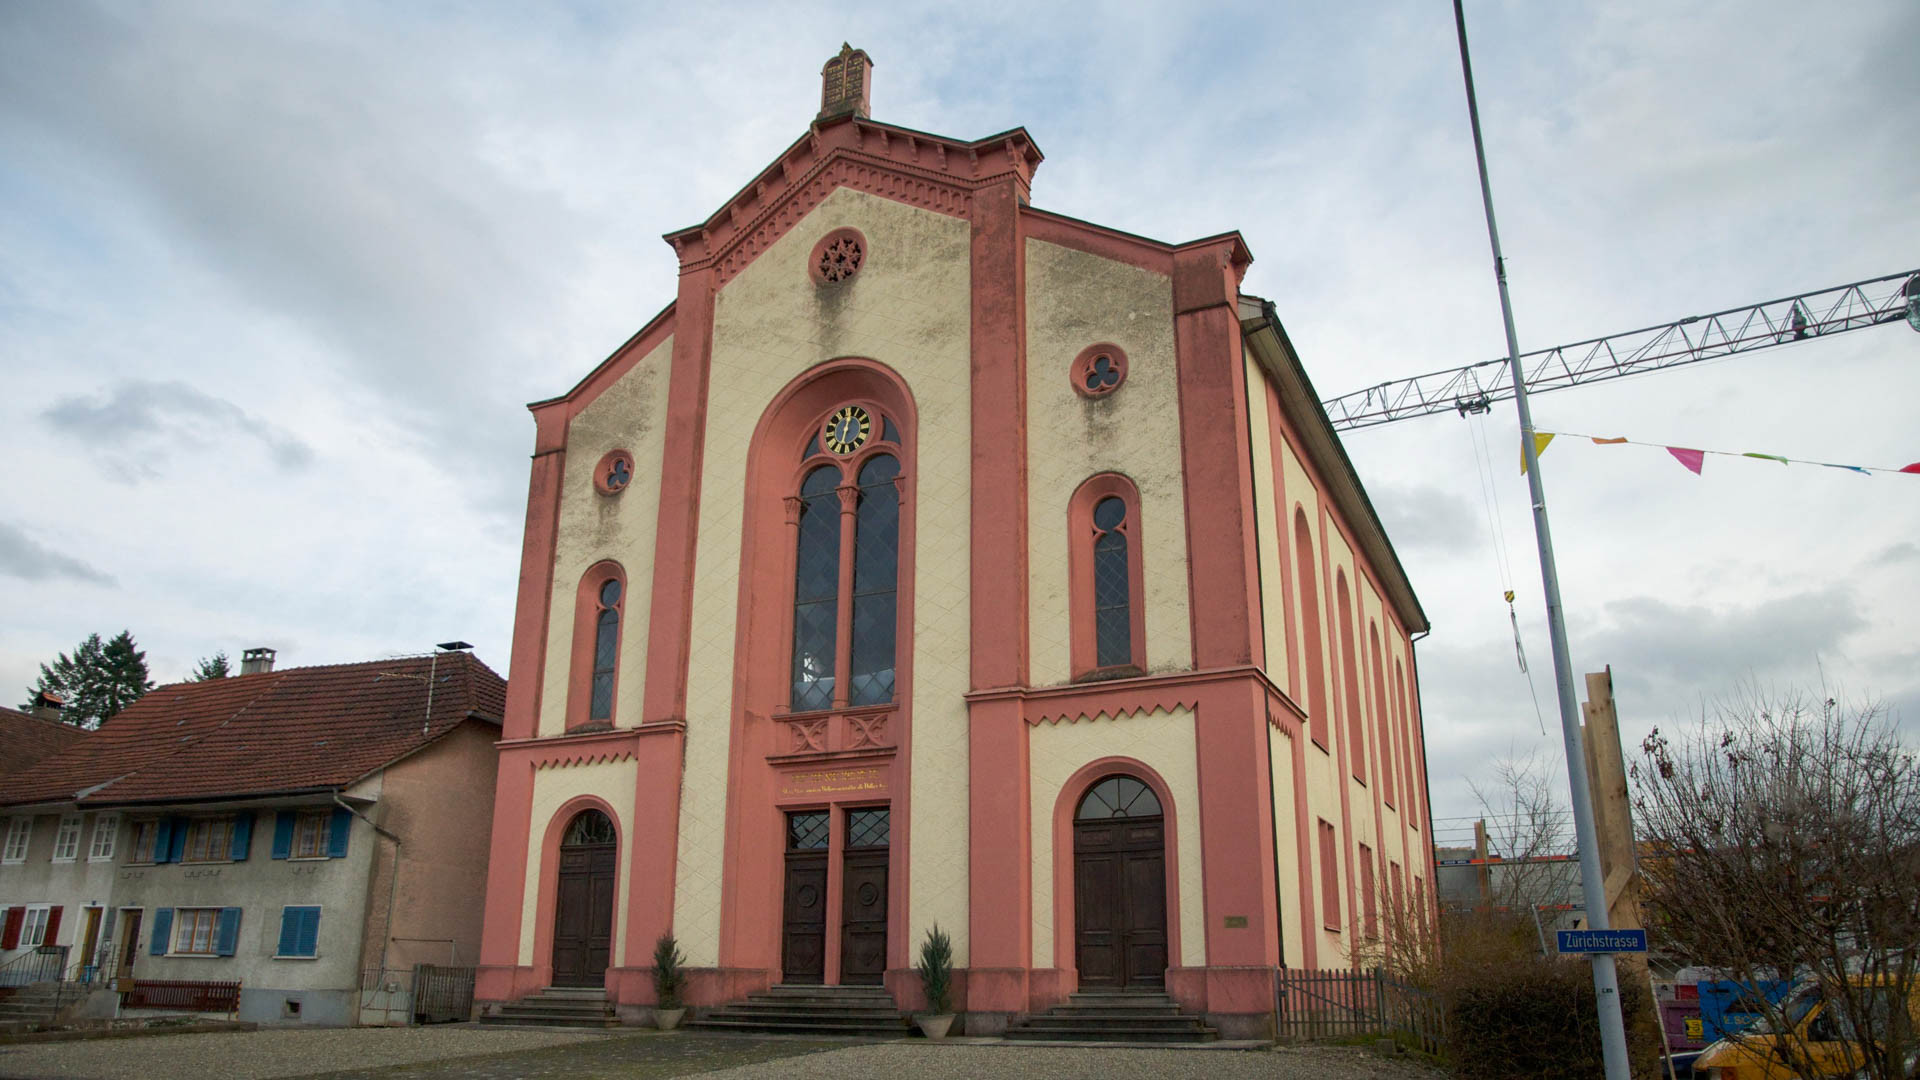 La synagogue de Lengnau, dans le Surbtal en Argovie. C’est la plus ancienne synagogue de Suisse, construite en 1847. (photo Pierre-Yves Moret RTSreligion) 